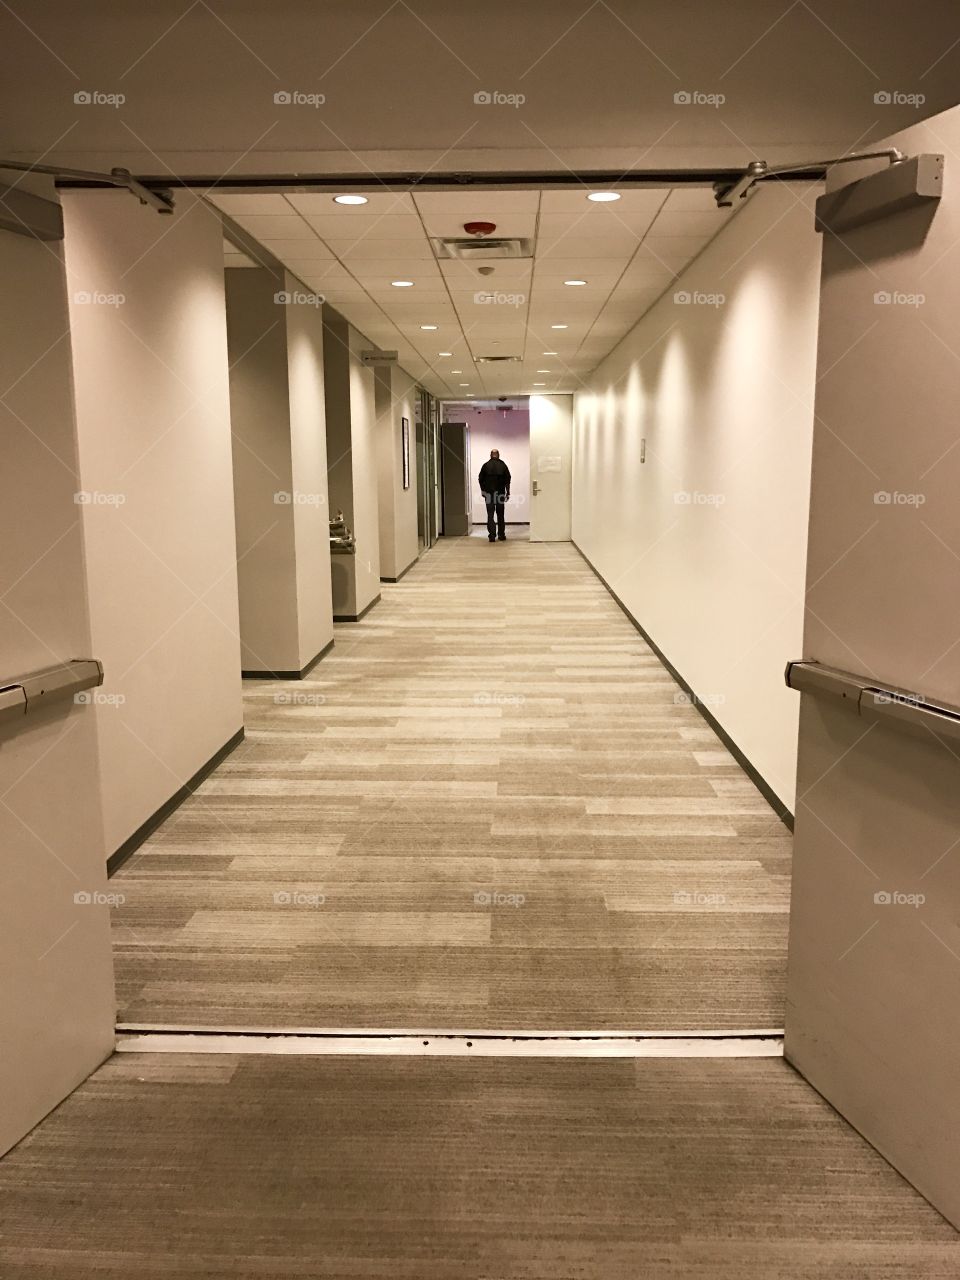 Man in a hallway